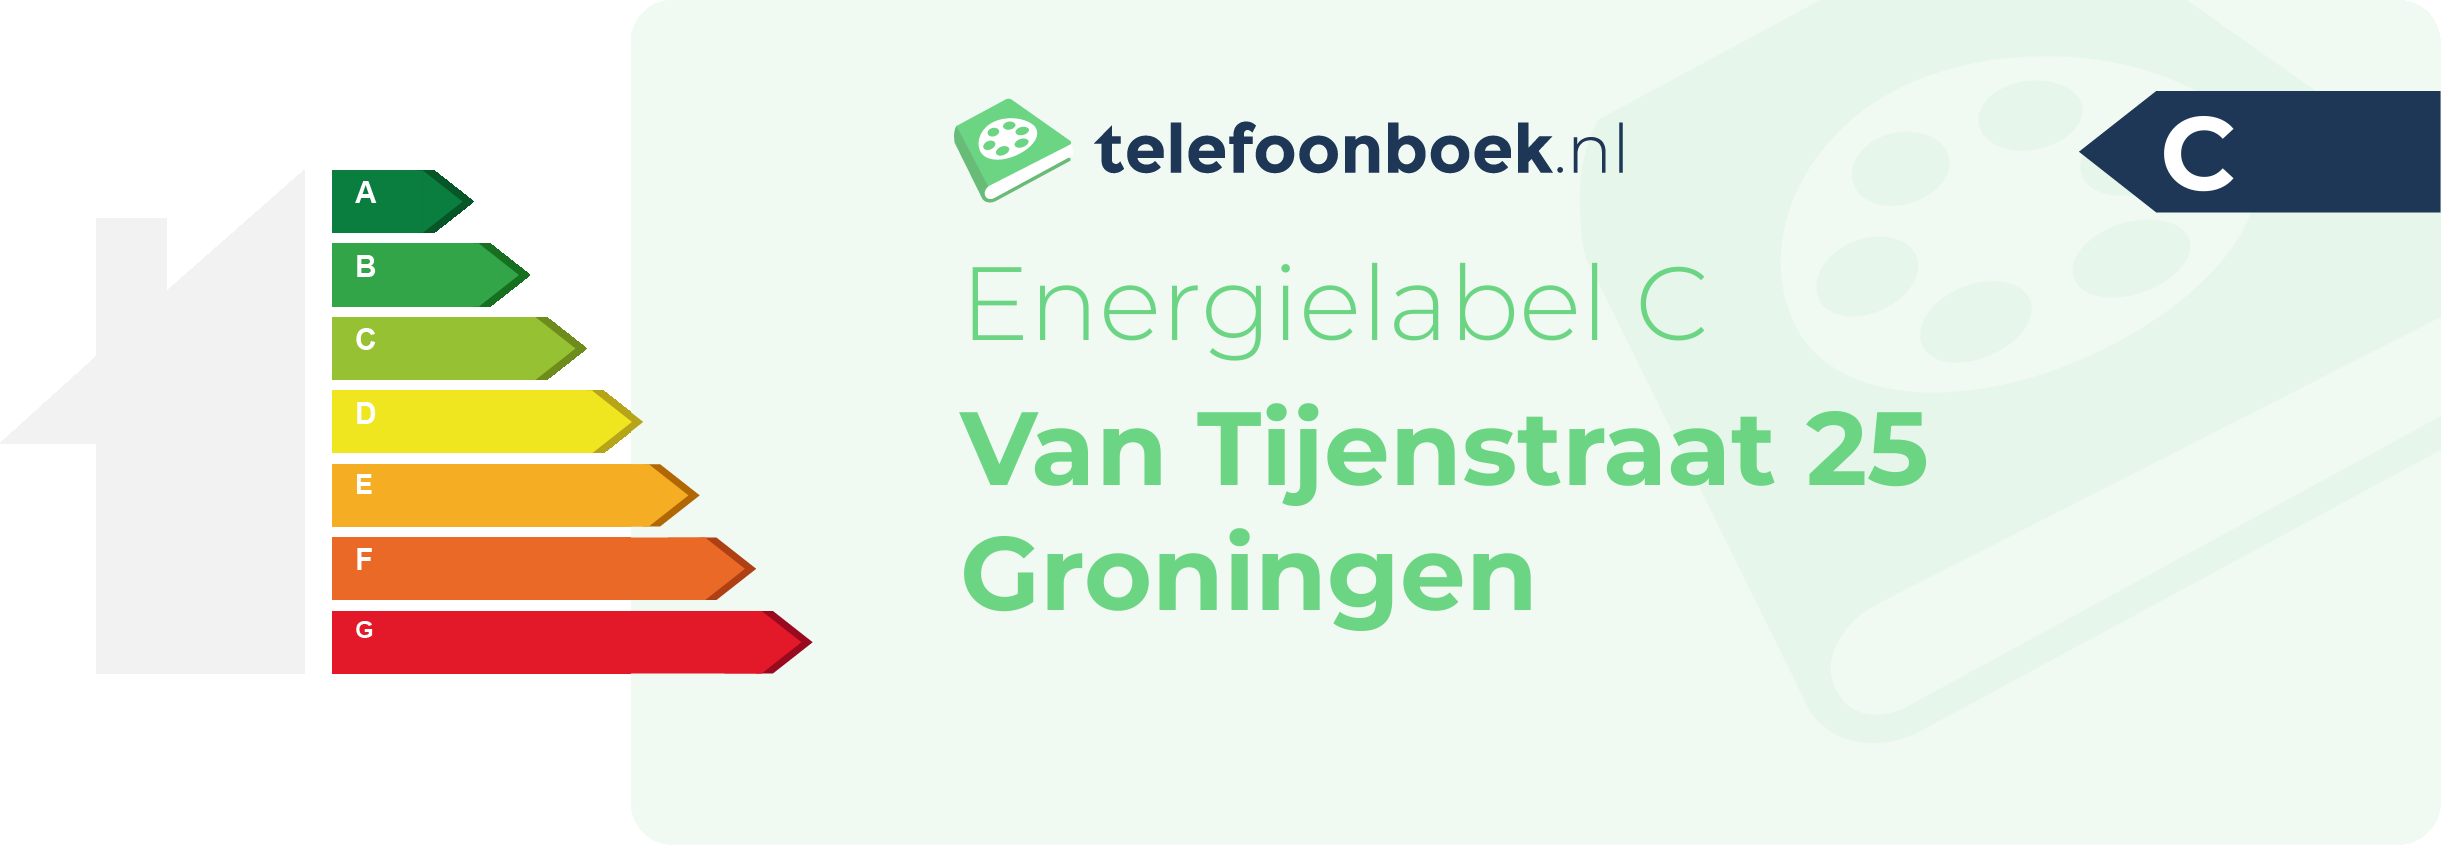 Energielabel Van Tijenstraat 25 Groningen